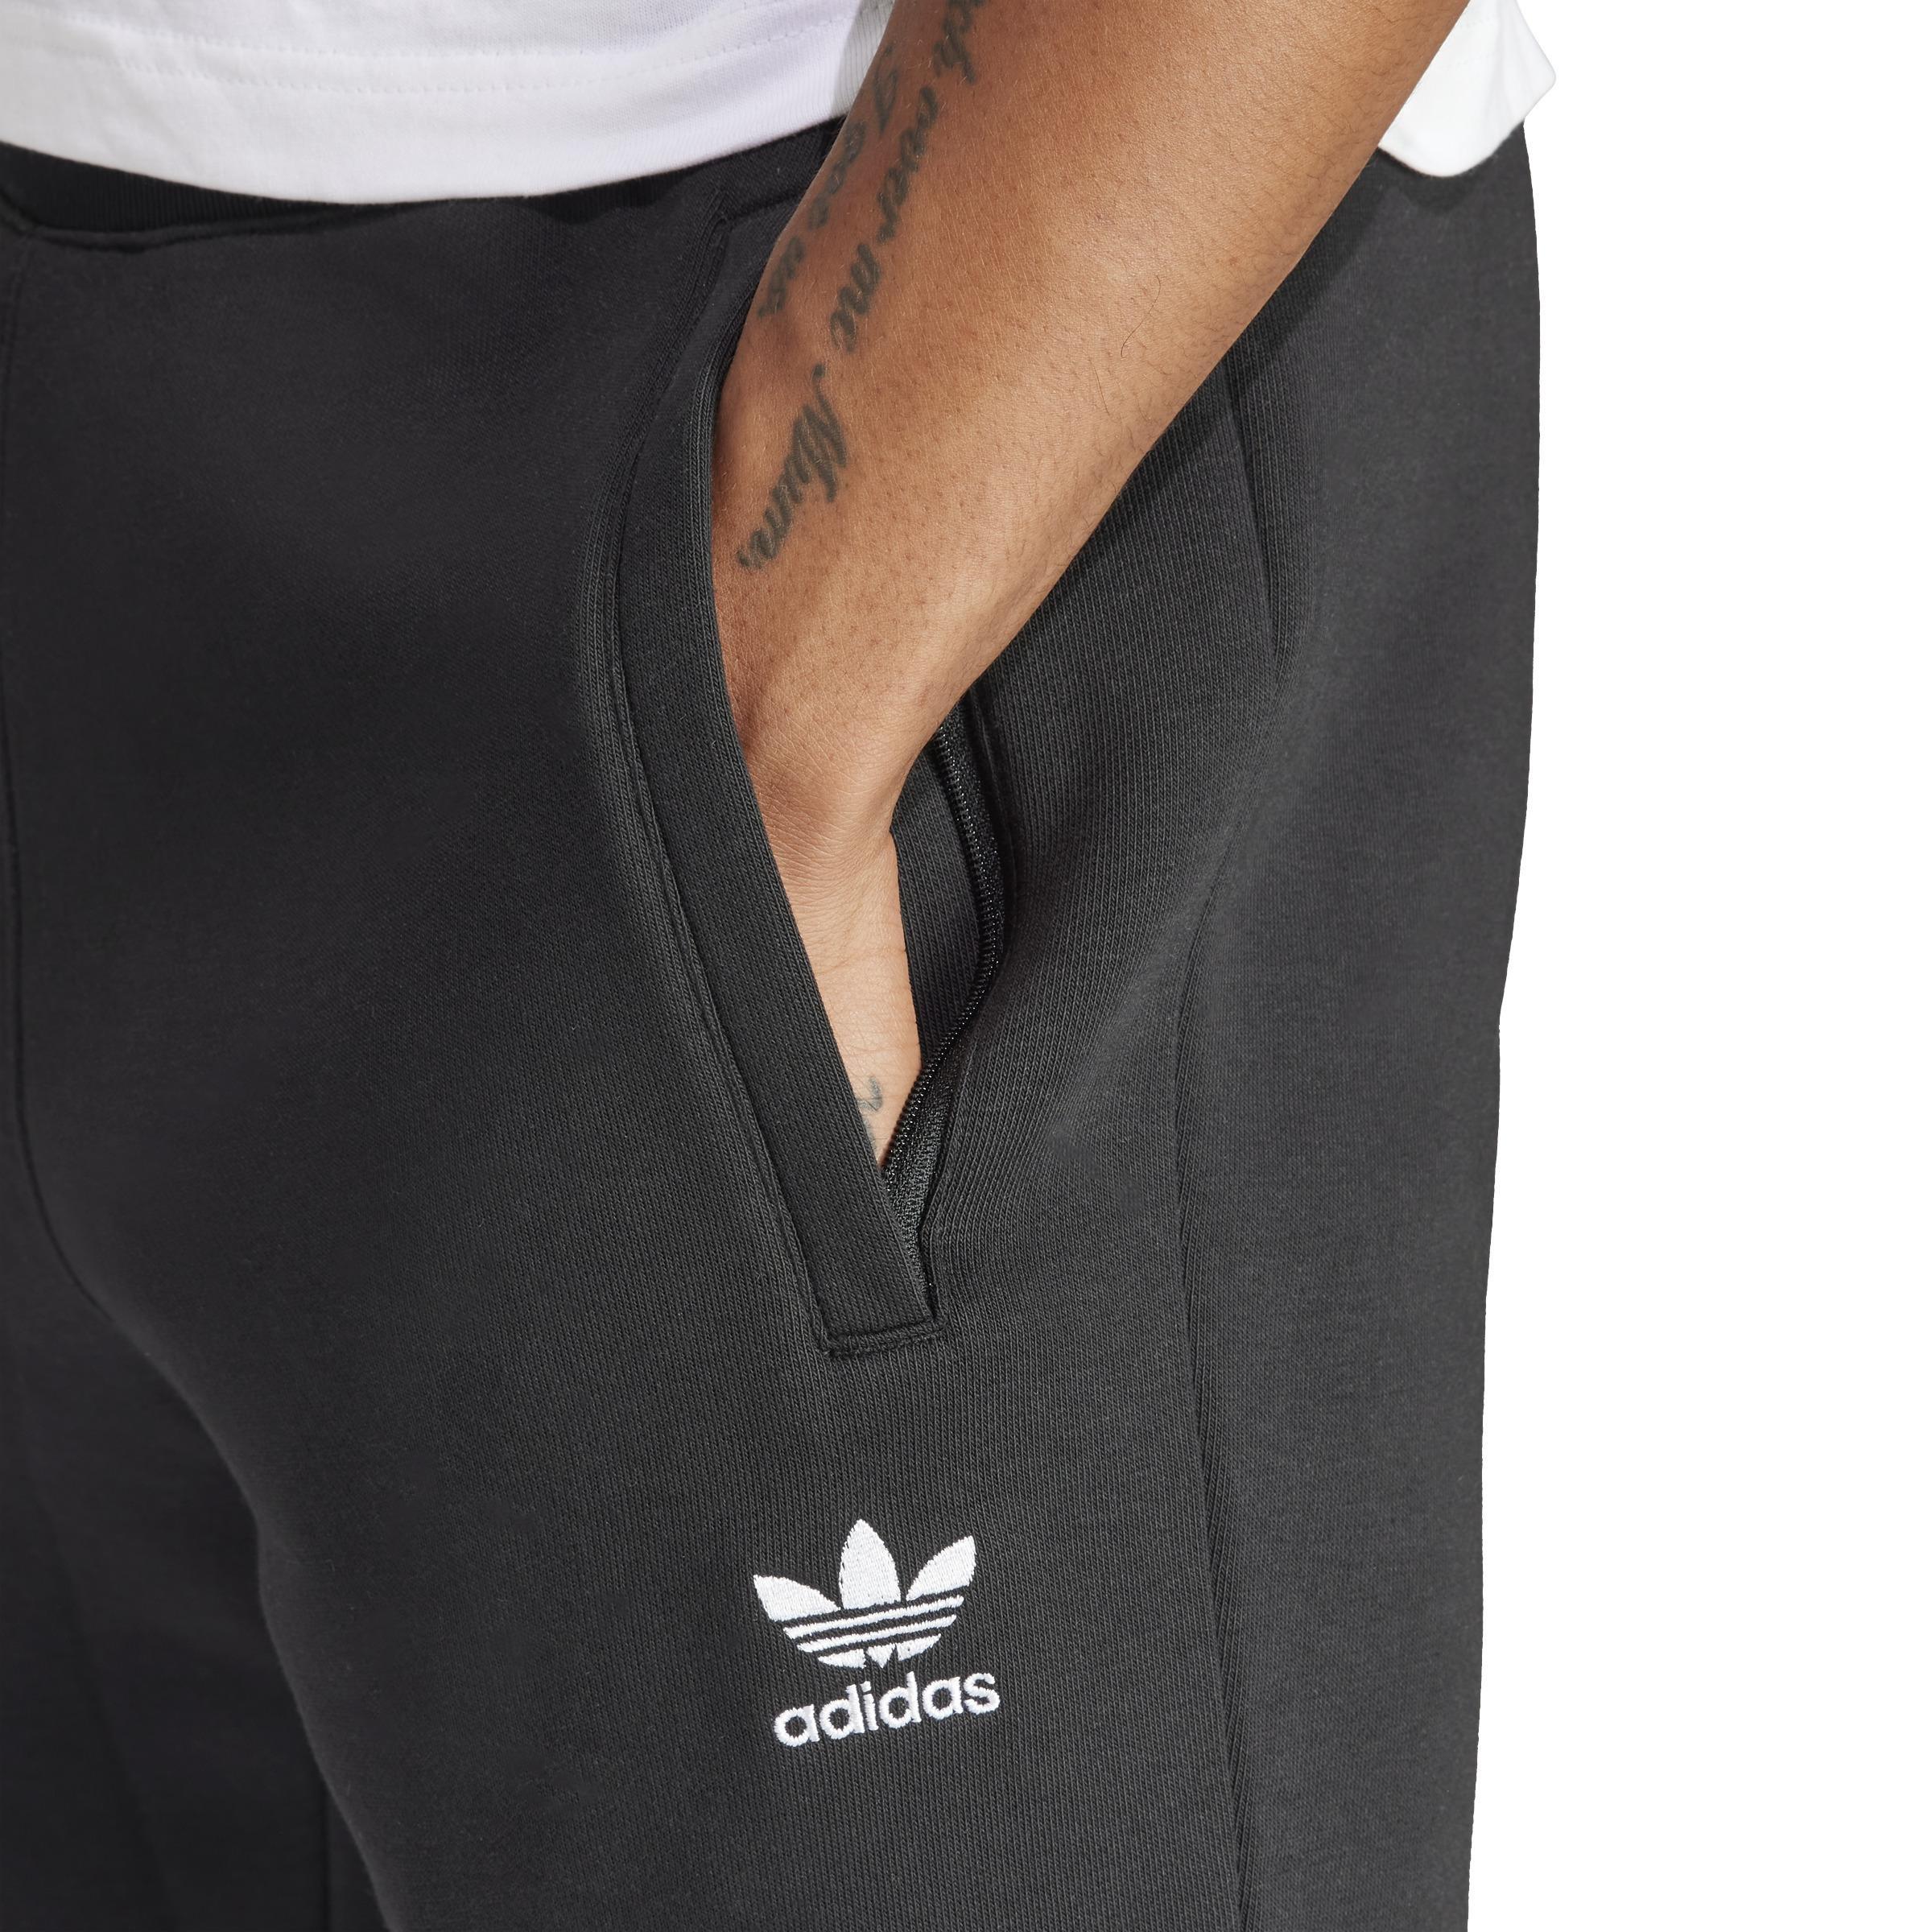 Adidas Originals Joggers & Sweatpants for Young Adult Men